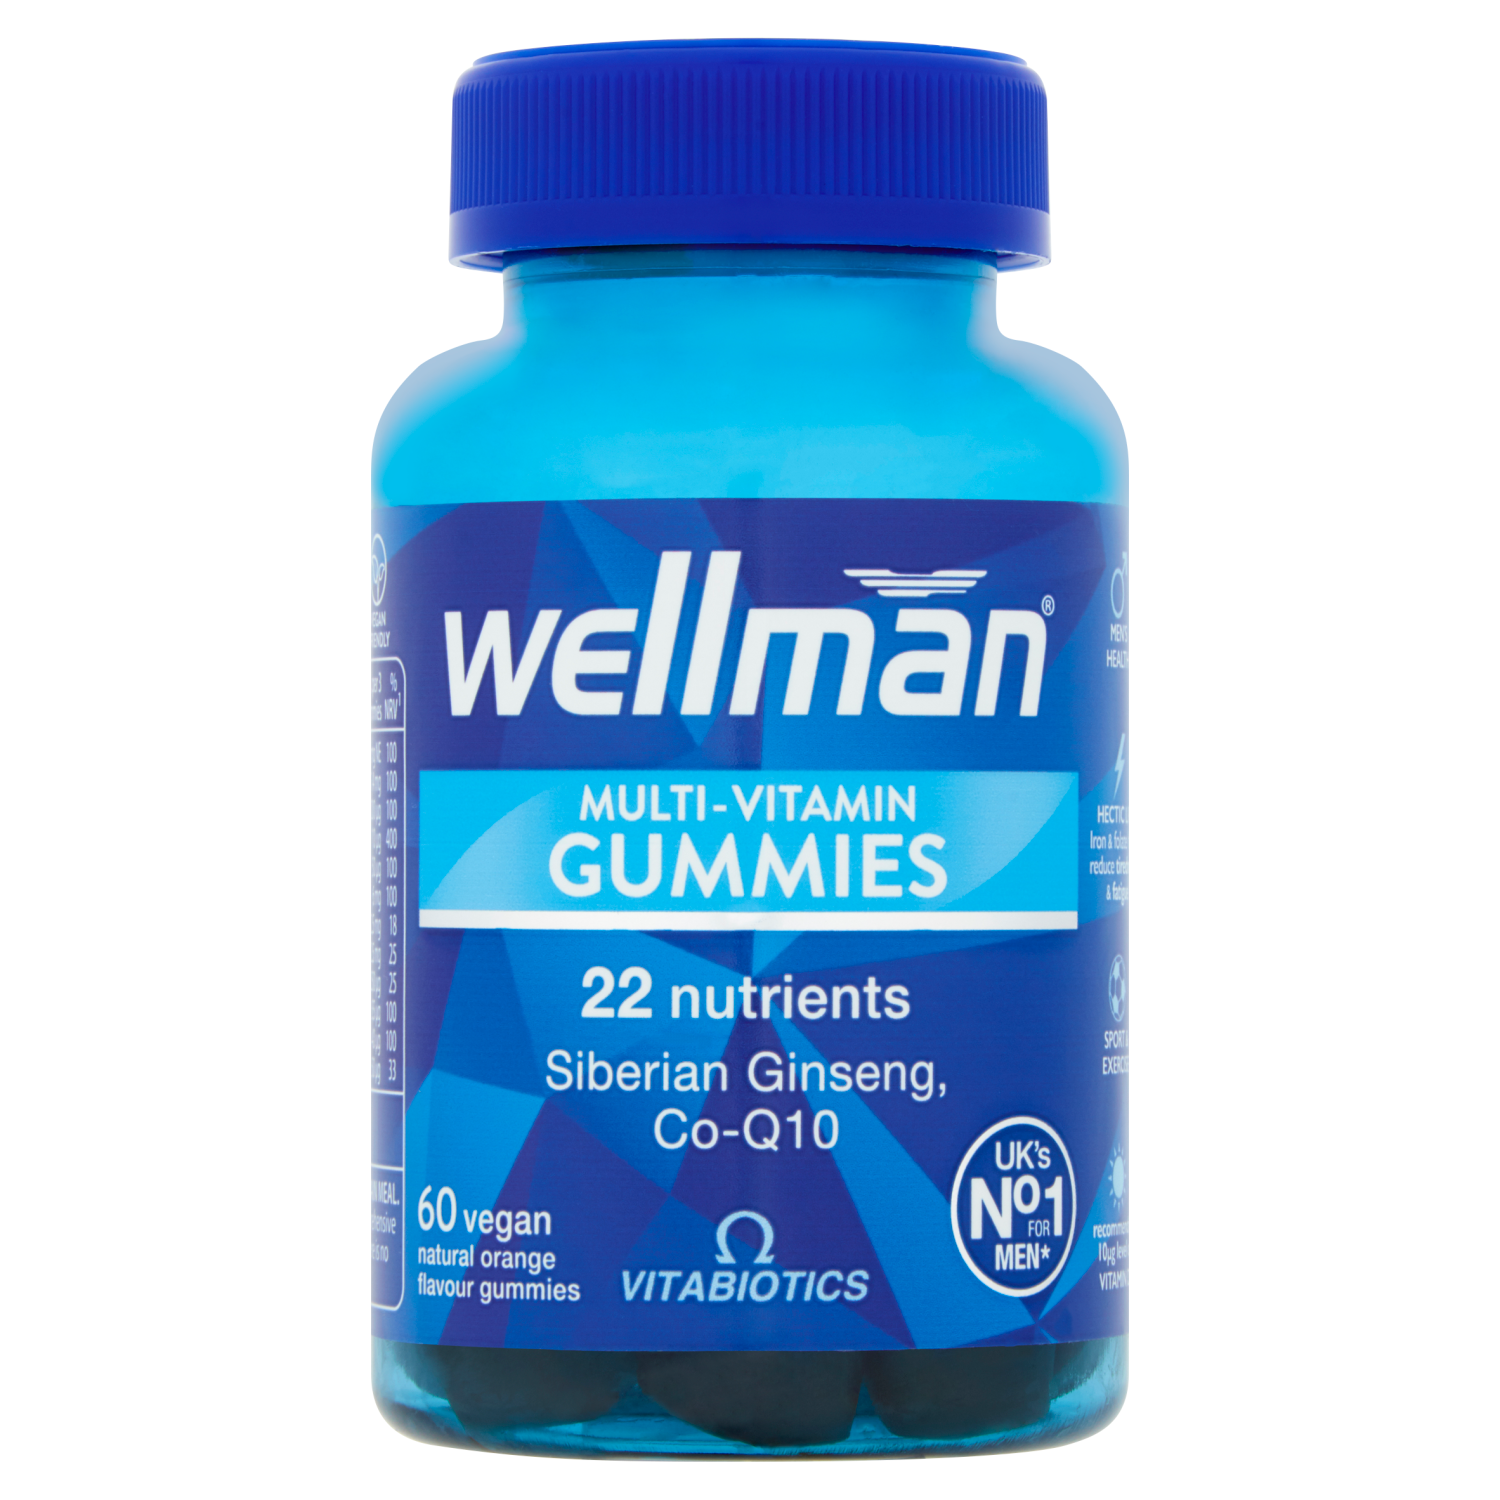 Vitabiotics Wellman Multi-Vitamin Gummies (60 Vegan Orange Gummies)